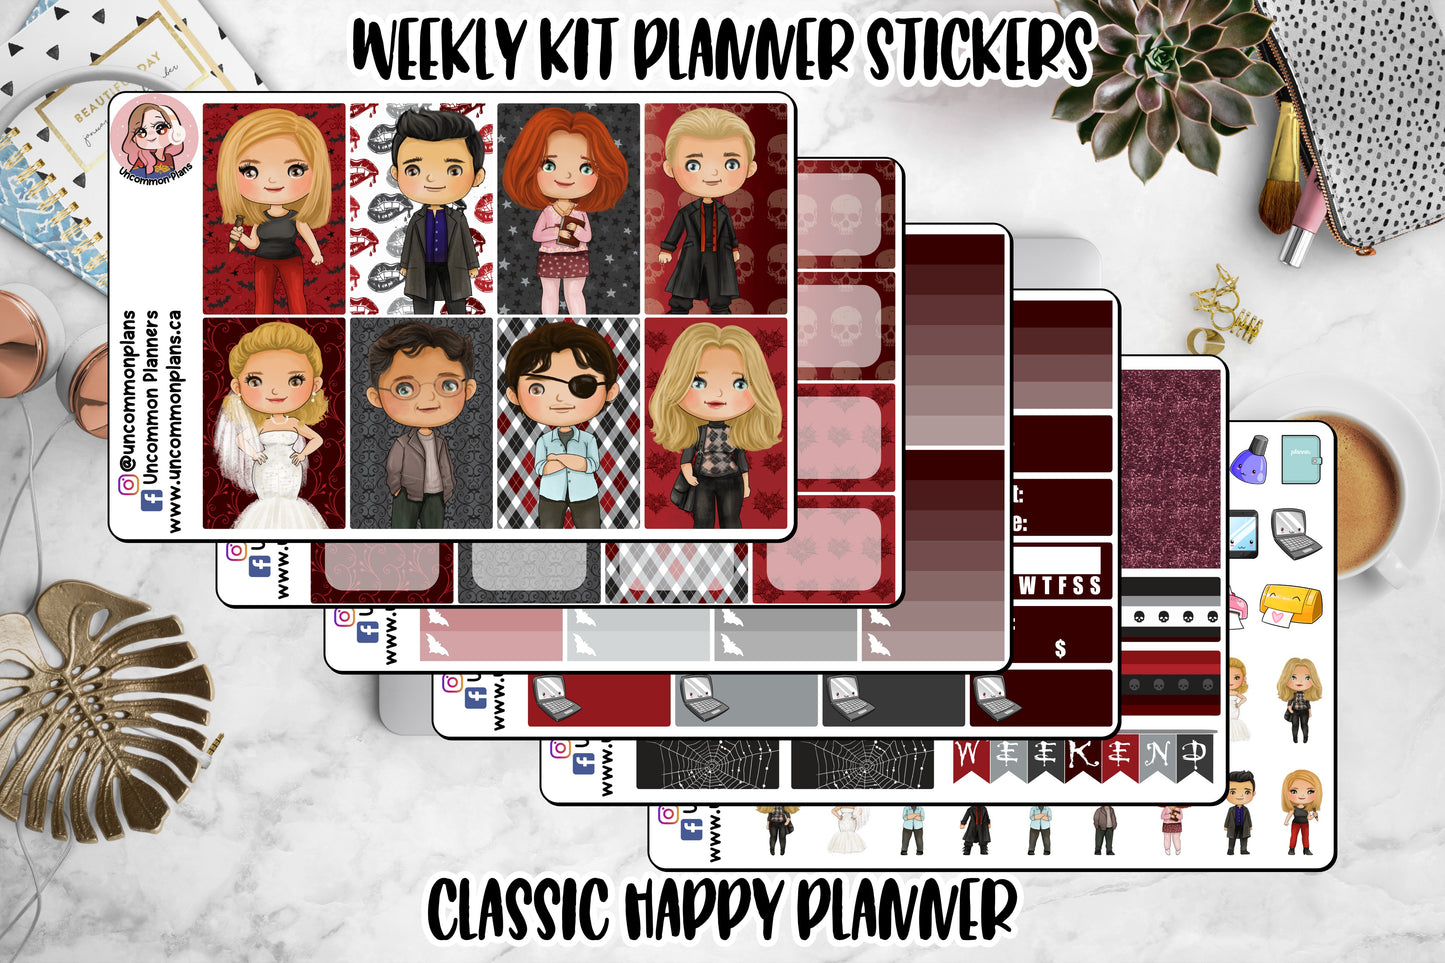 Teenage Vampire Hunter Girl Weekly Kit Happy Planner Stickers